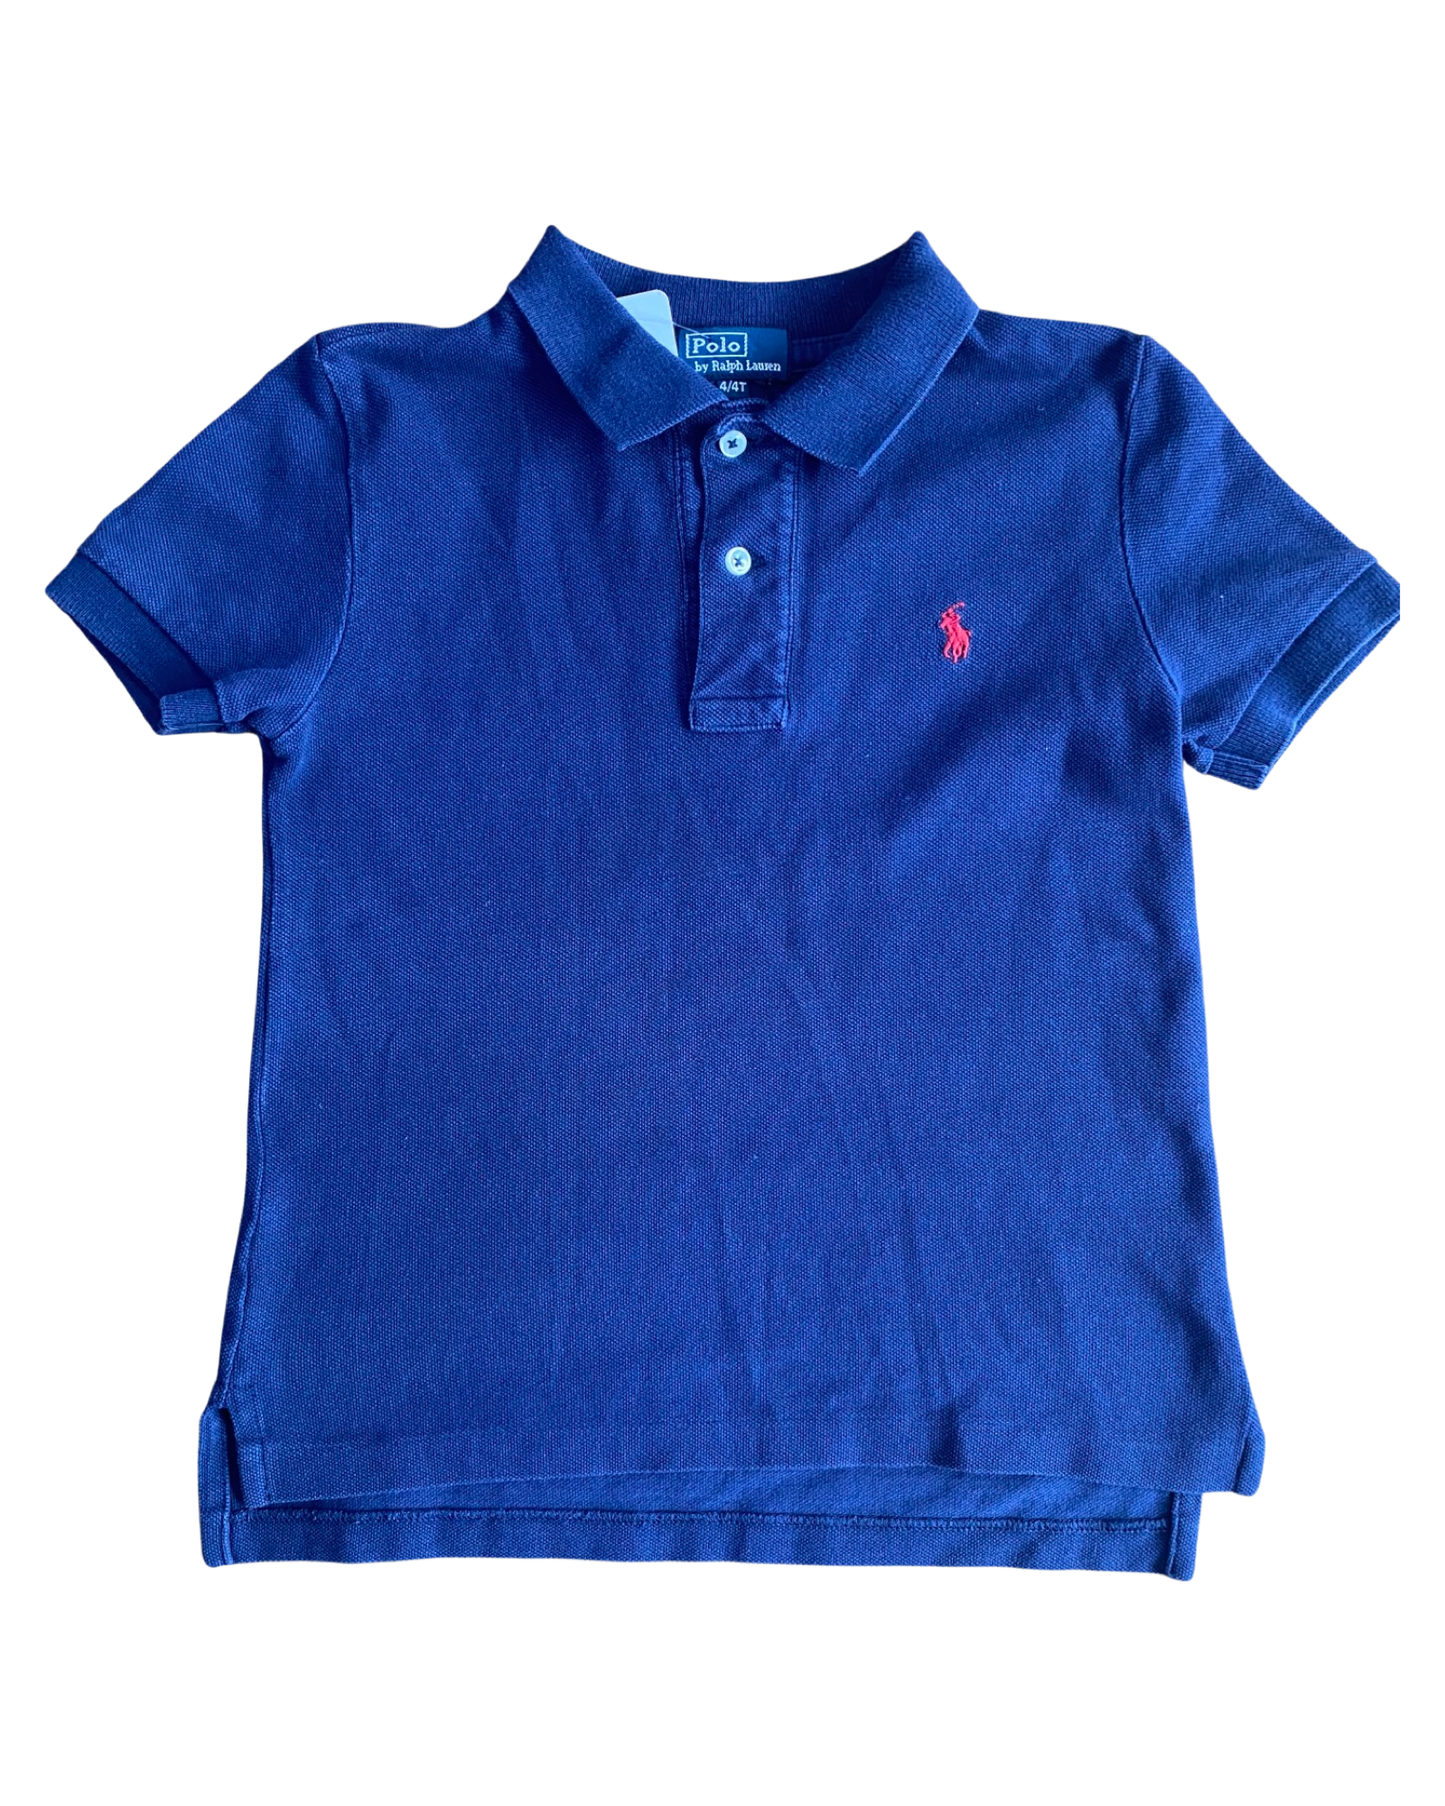 Ralph Lauren navy polo shirt (3-4yrs)